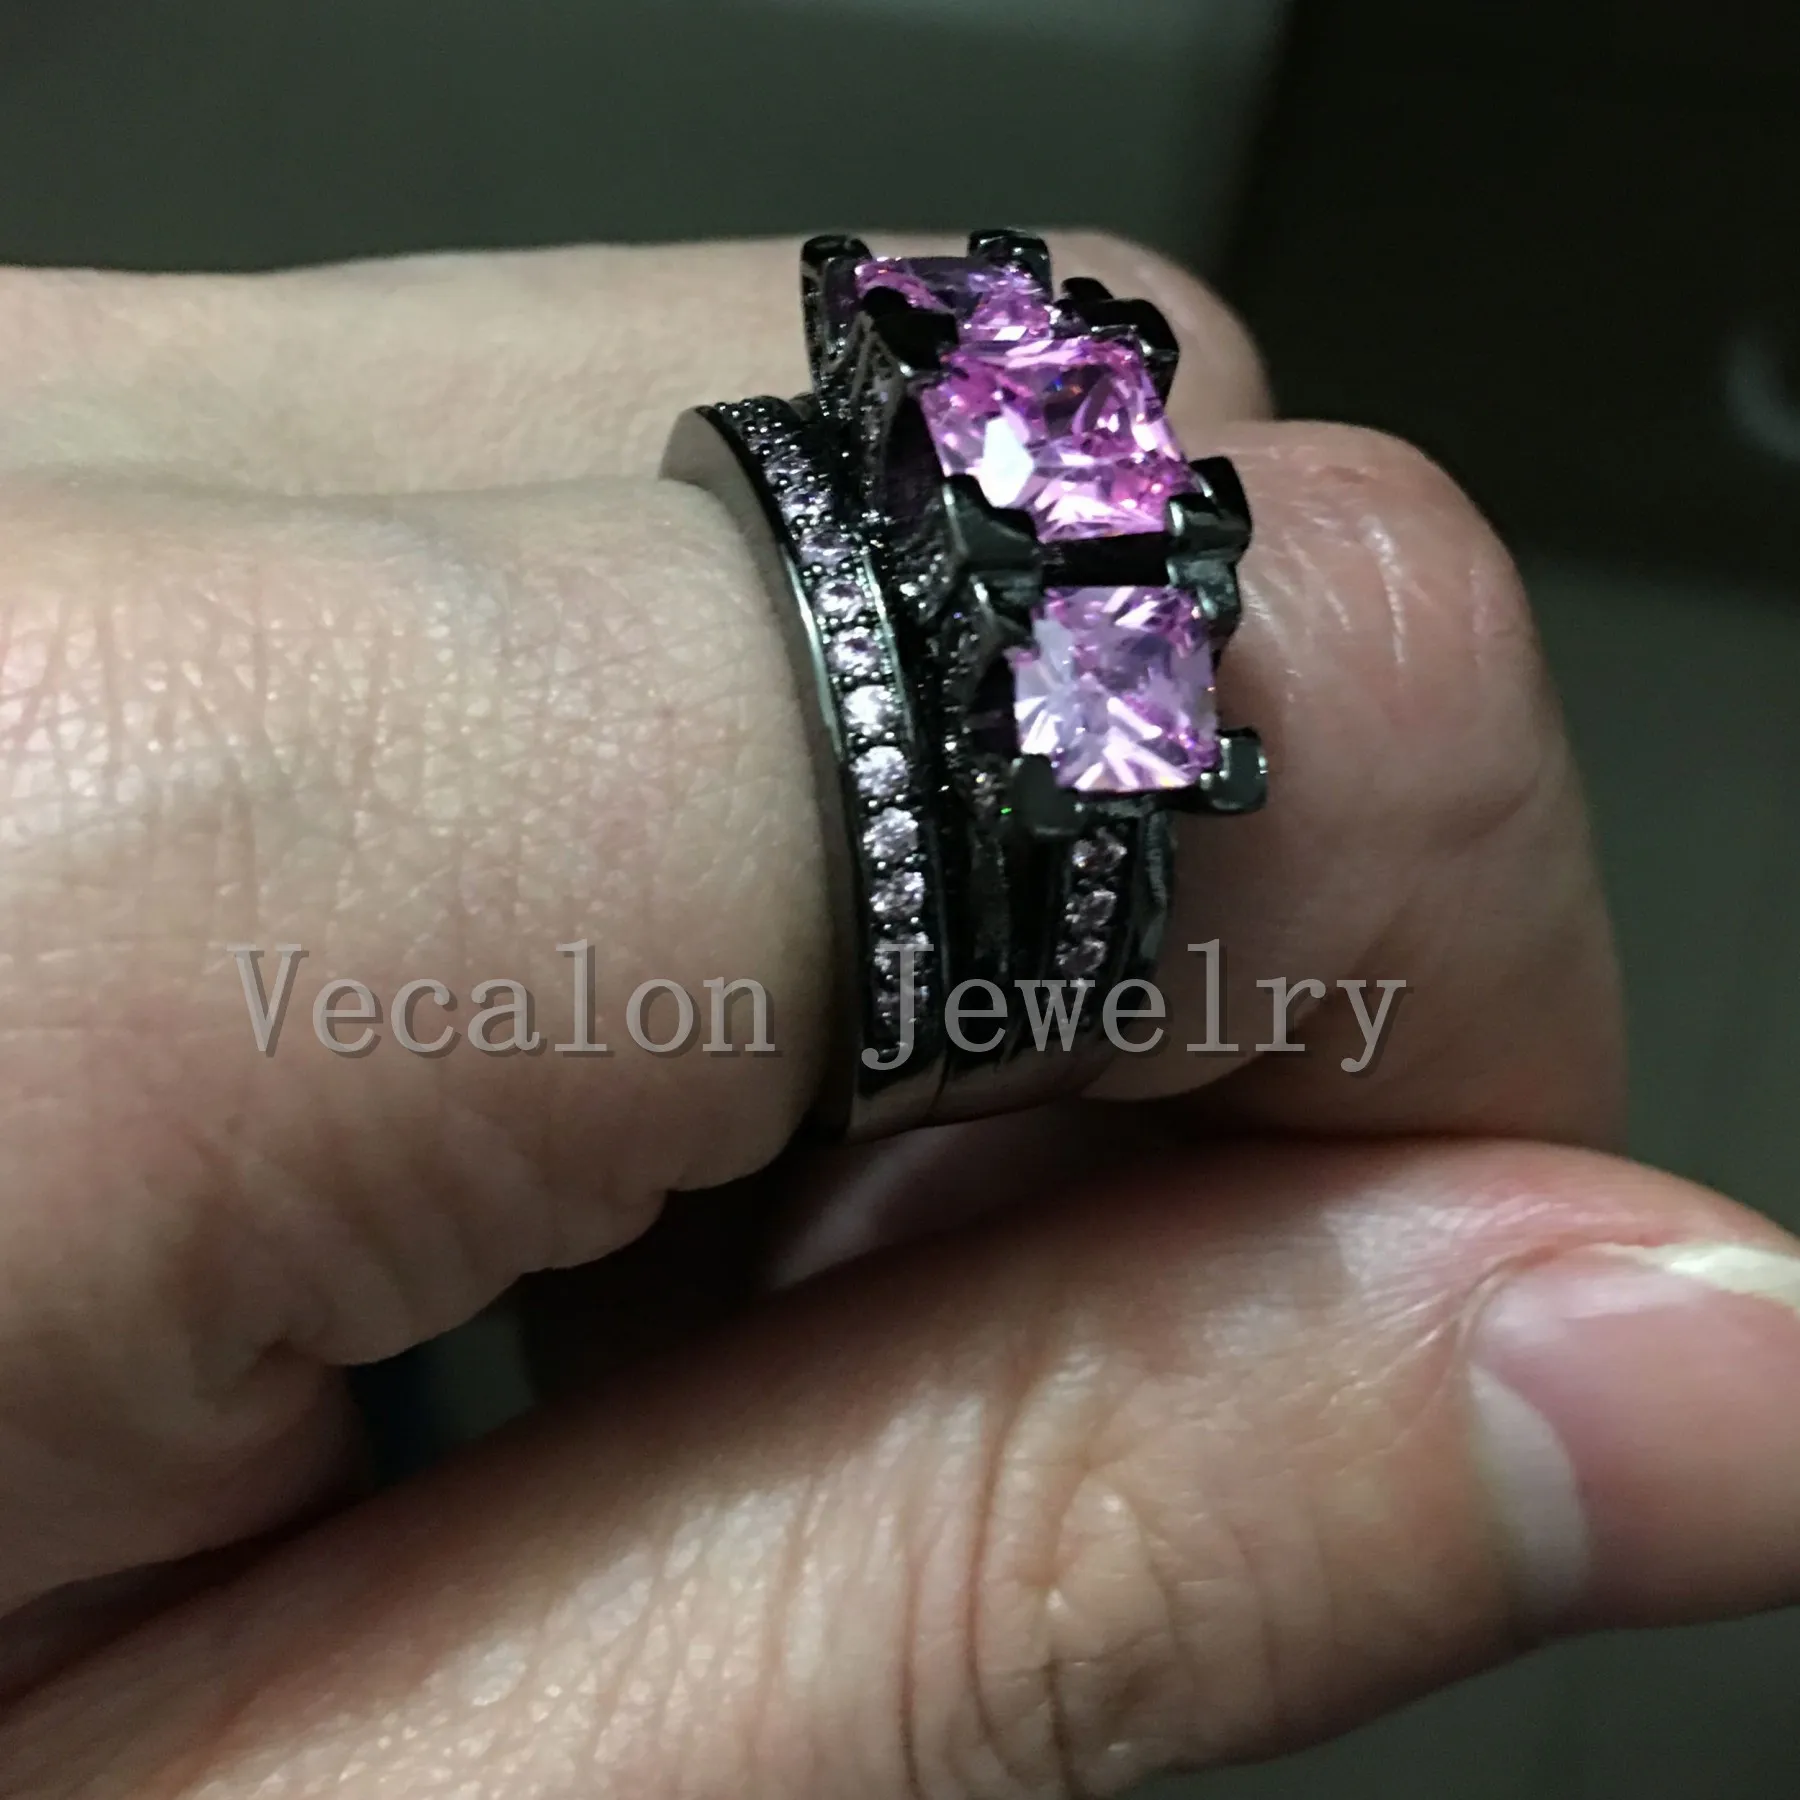 Vecalon Black Gold Заполненные Женщины Обручальное Обручальное кольцо свадьба Установите Розовый Сапфир Имитации Алмазные 925 Стерлинговое Серебряное Кольцо